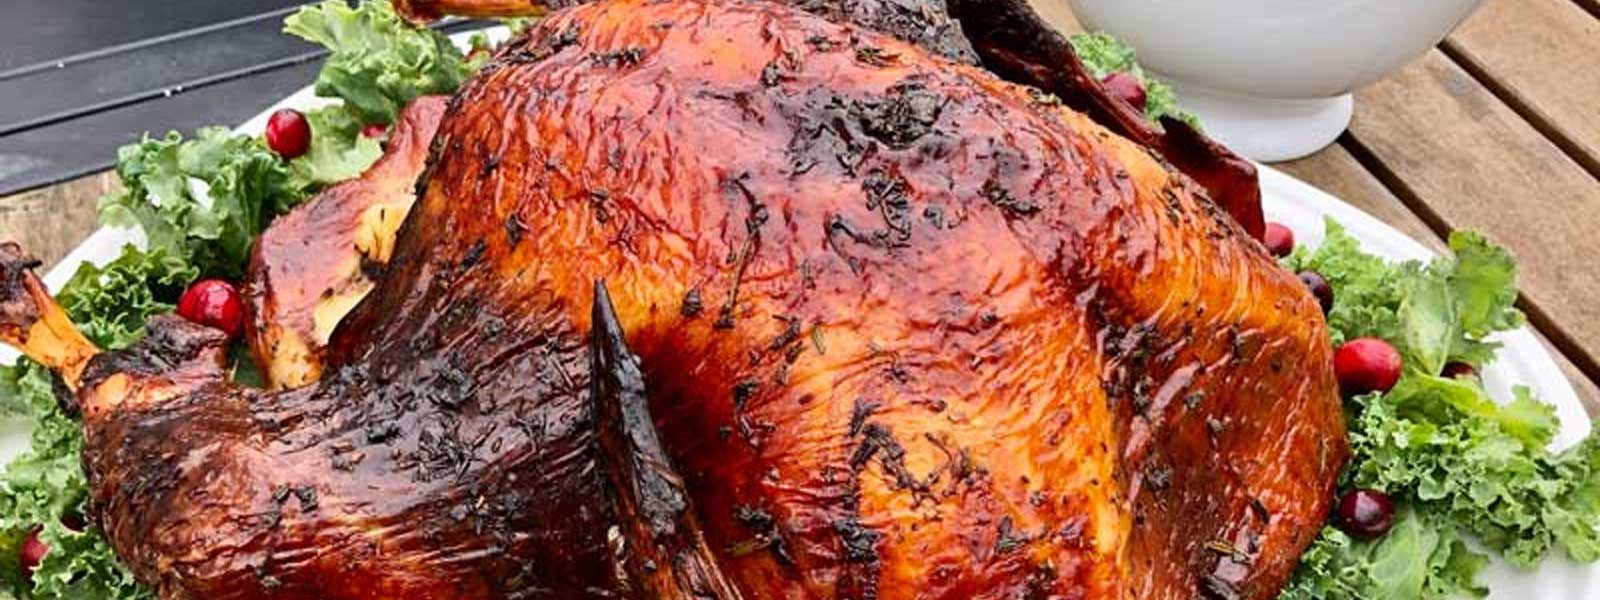 Brined Roasted Turkey